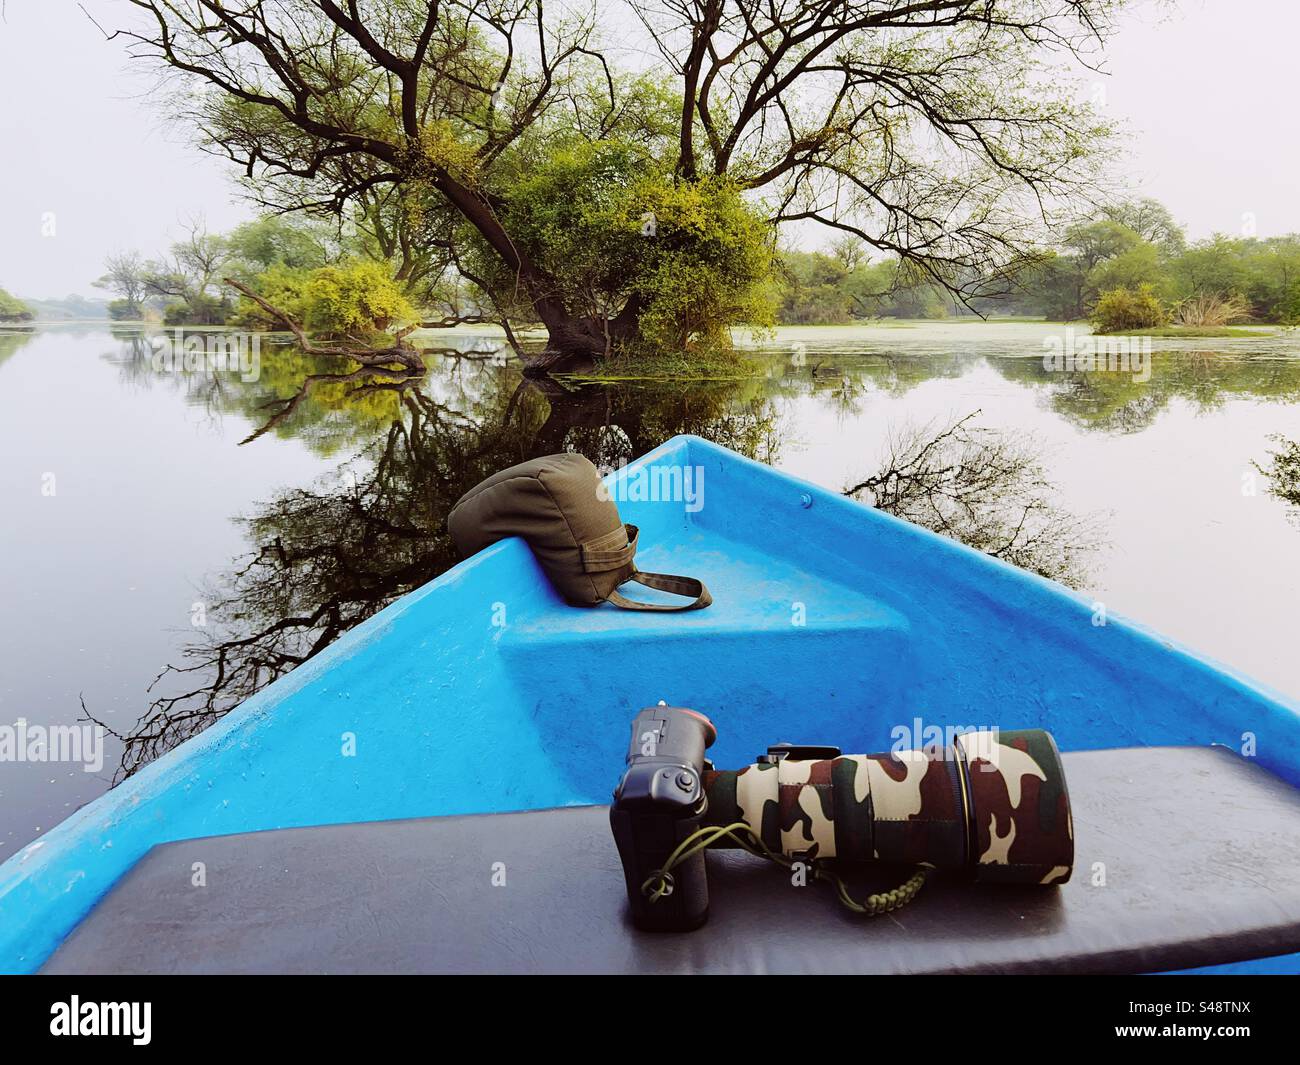 Un bateau bleu avec un appareil photo reflex numérique avec téléobjectif et sac de haricots sur un bateau dans un canal dans une jungle pleine d'arbres et de leur reflet Banque D'Images